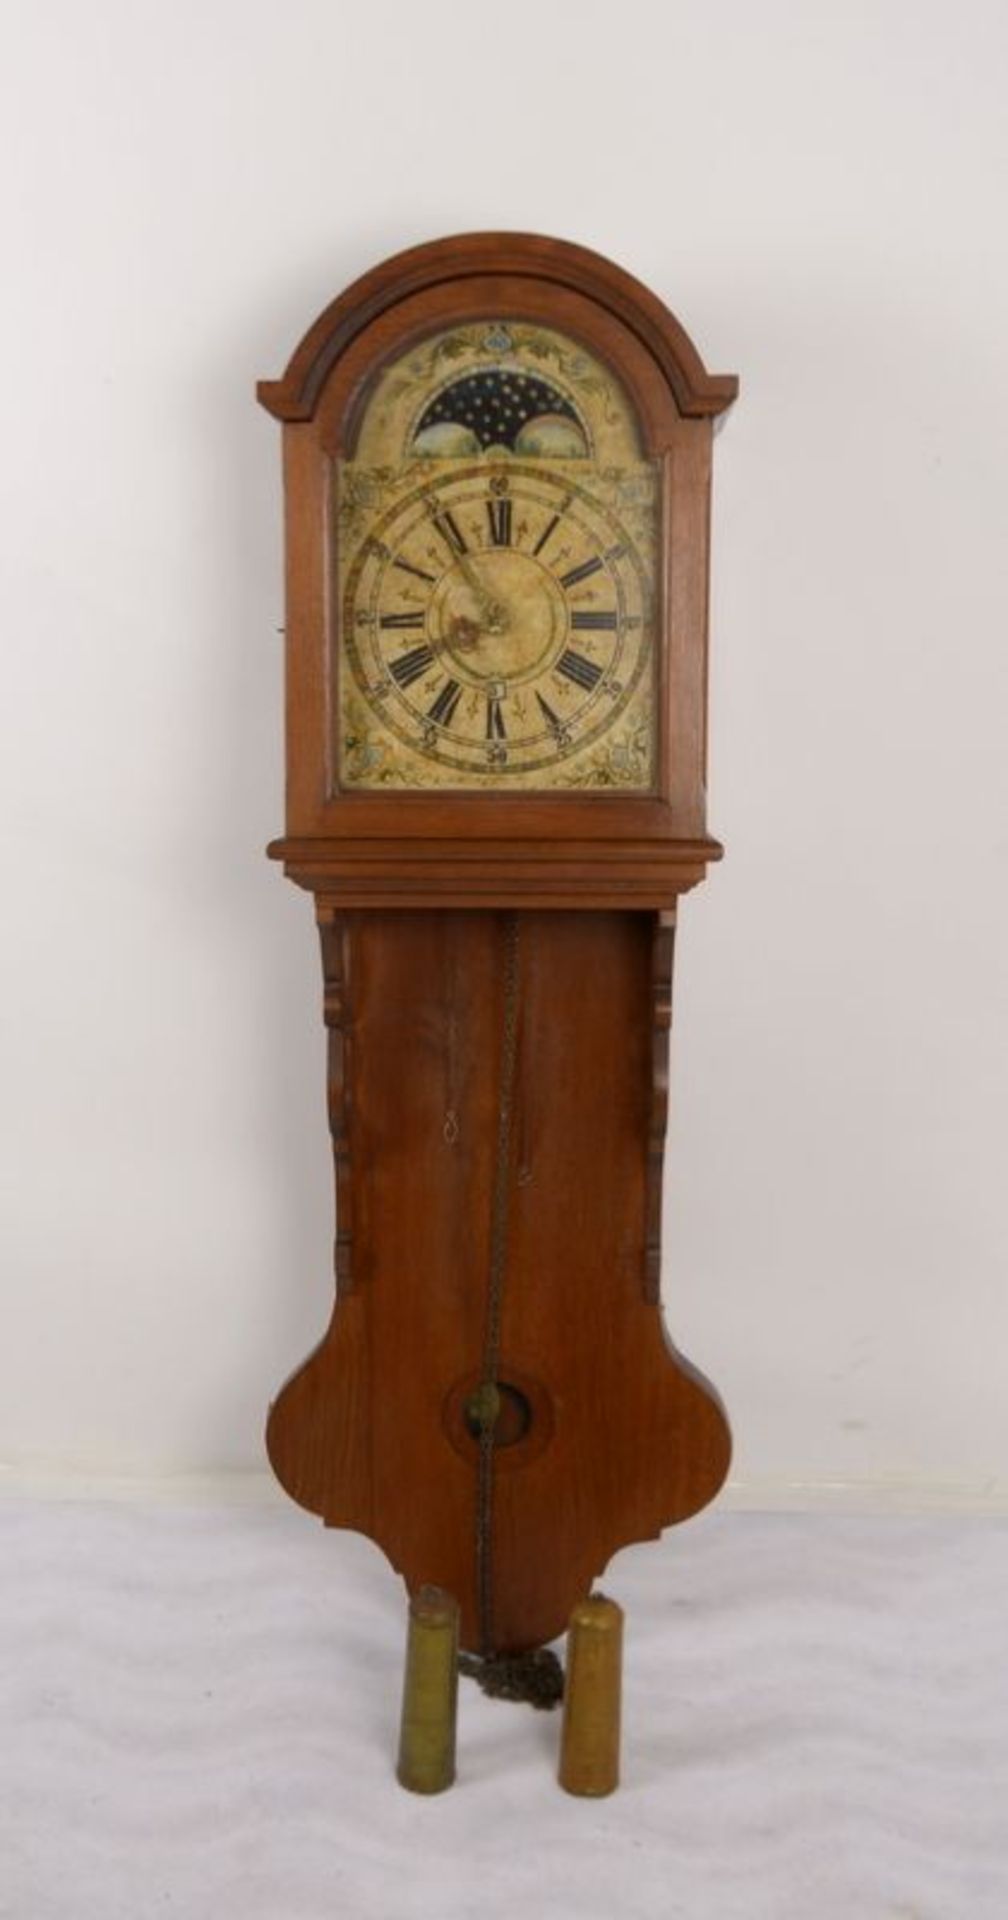 Halbkastenuhr (Friesland - um 1900), im Eichengeh&auml;use, Uhr mit Mondphase und Datumsanzeige; H&o